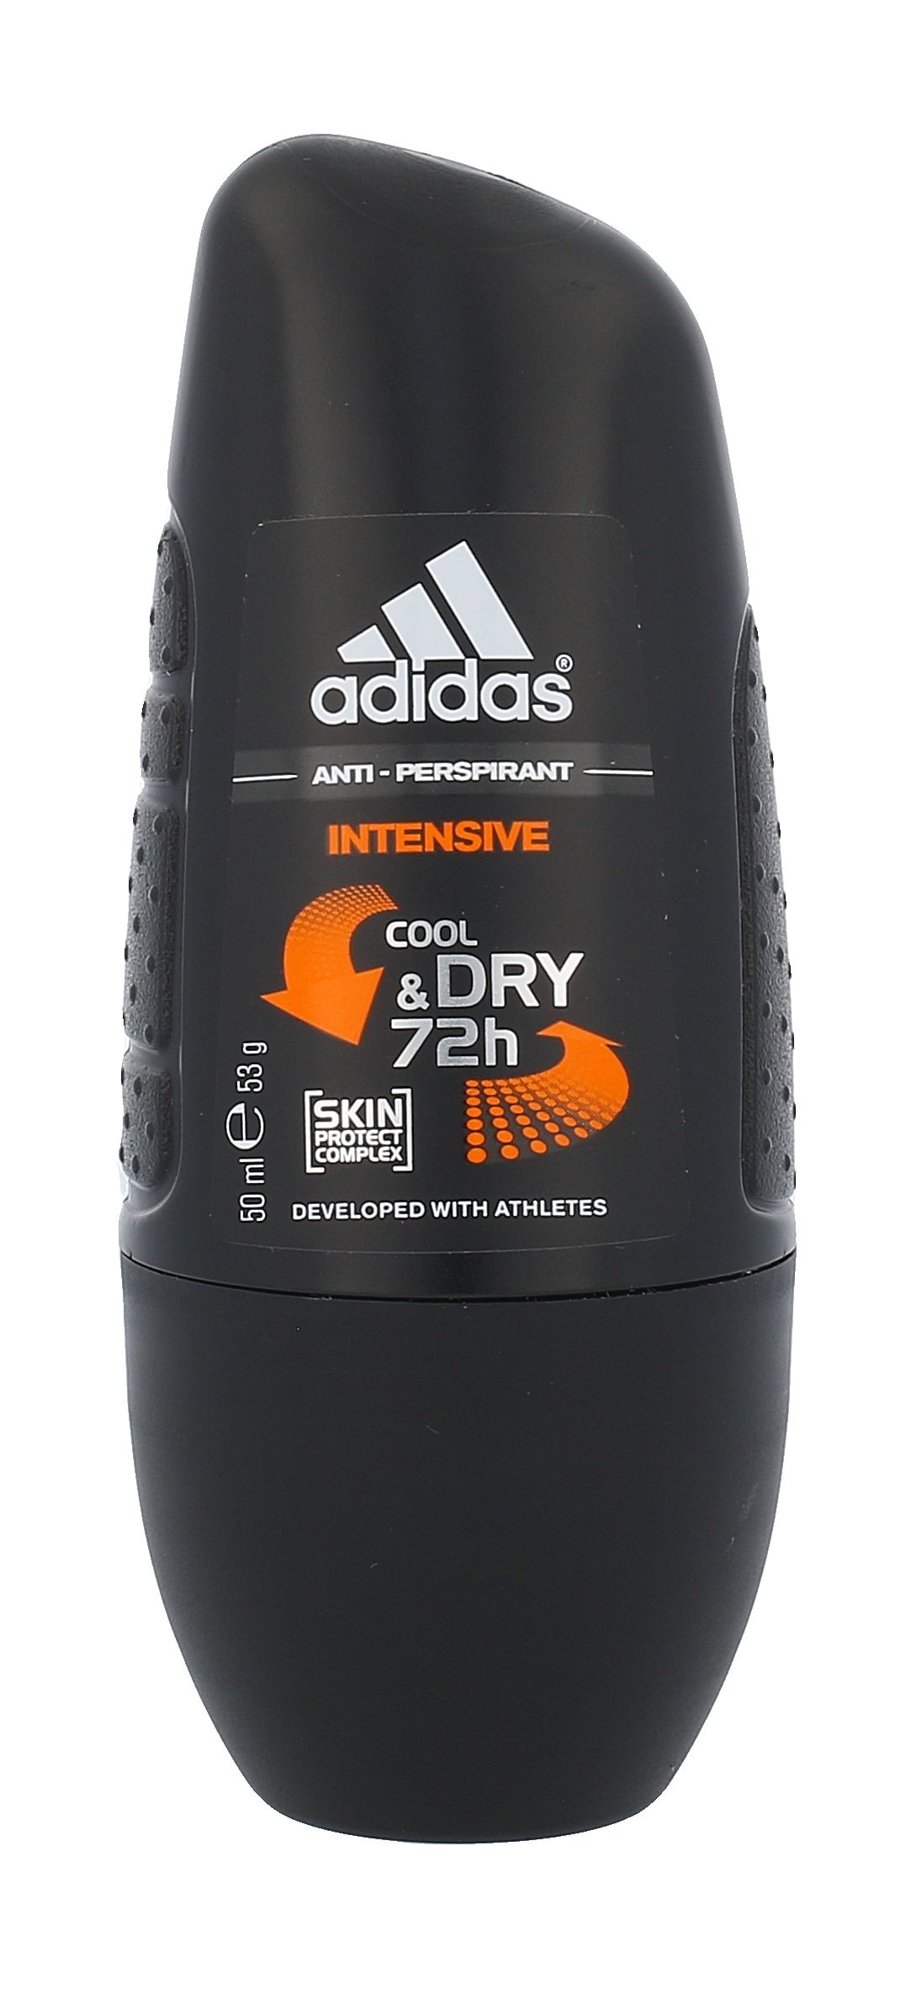 Adidas Intensive Cool & Dry 72h 50ml antipersperantas